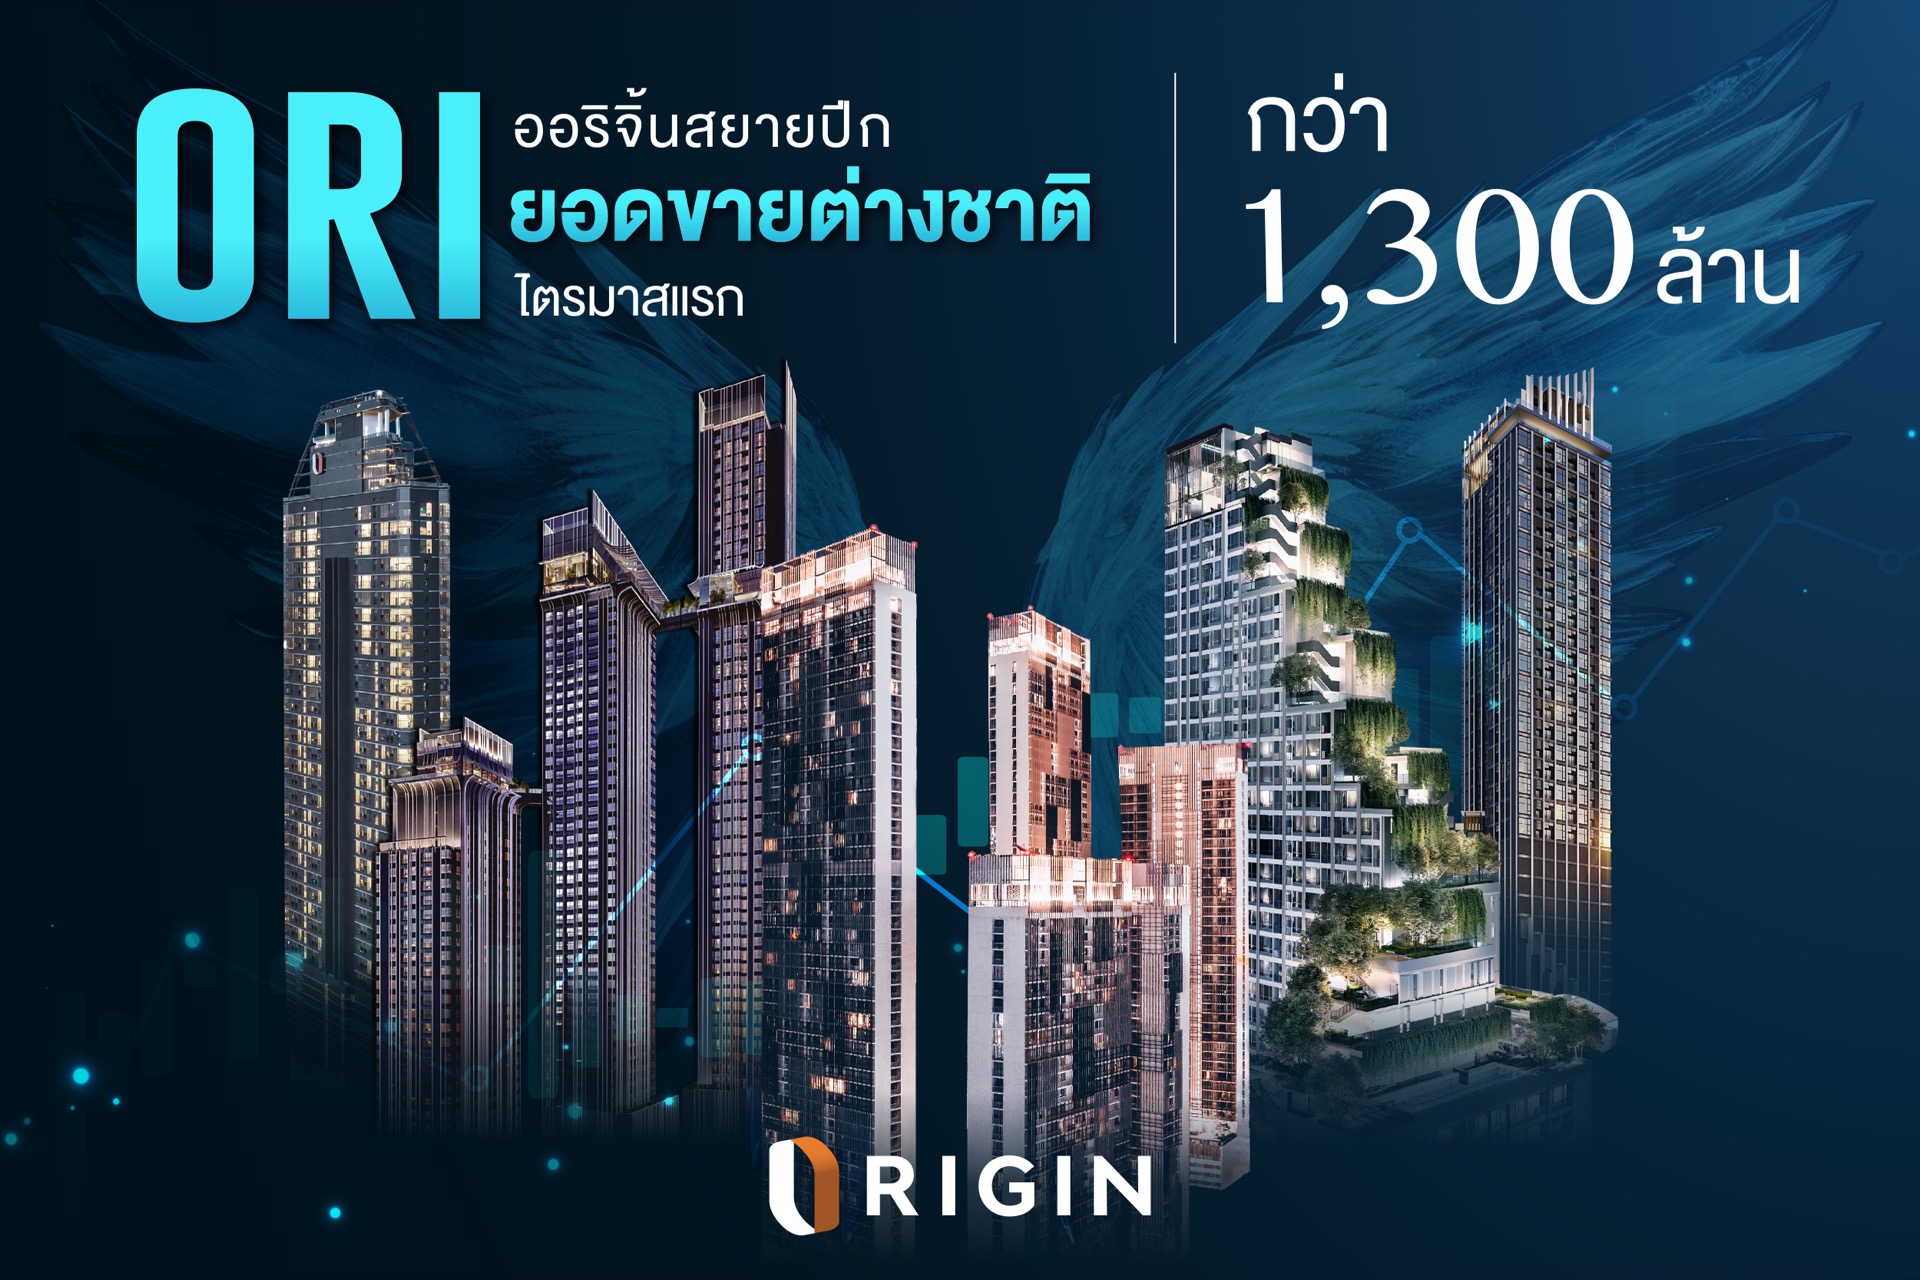 ออริจิ้น สยายปีกรับยอดขายต่างชาติ Q1/2567 กว่า 1,300 ล้าน เปิดตัว Origin Agent Club รับเอเจนท์ไทย-เทศ บุกตลาดต่างชาติต่อเนื่อง